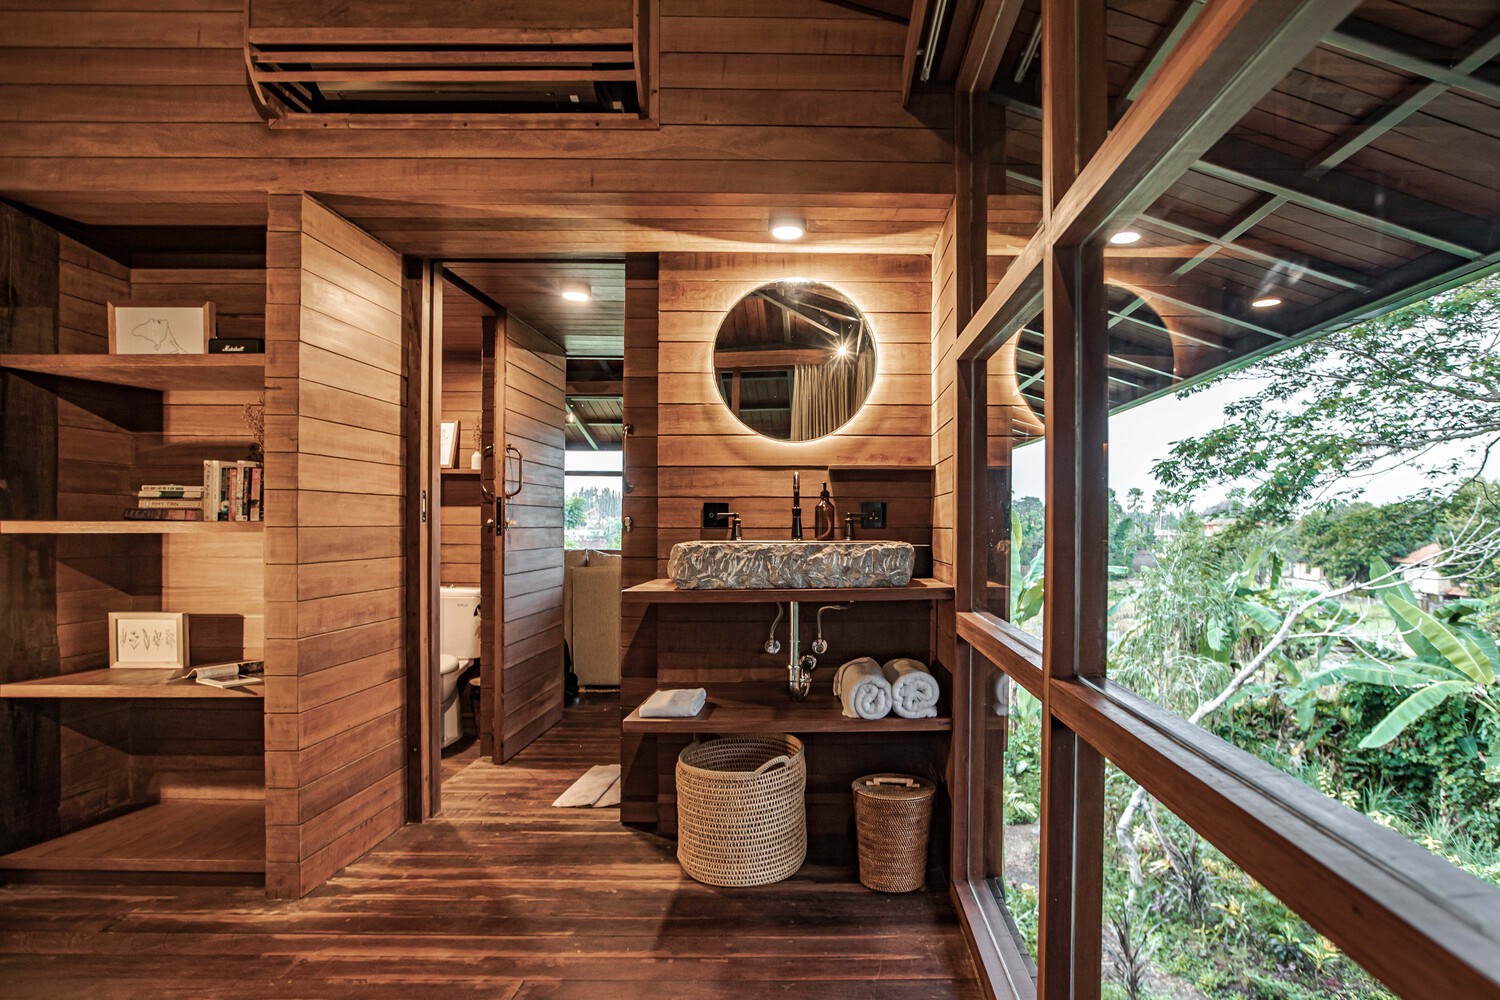 Phòng tắm và nhà vệ sinh được thiết kế sang trọng, tiện nghi khiến chúng ta liên tưởng đến những căn hộ khách sạn tại Bali.